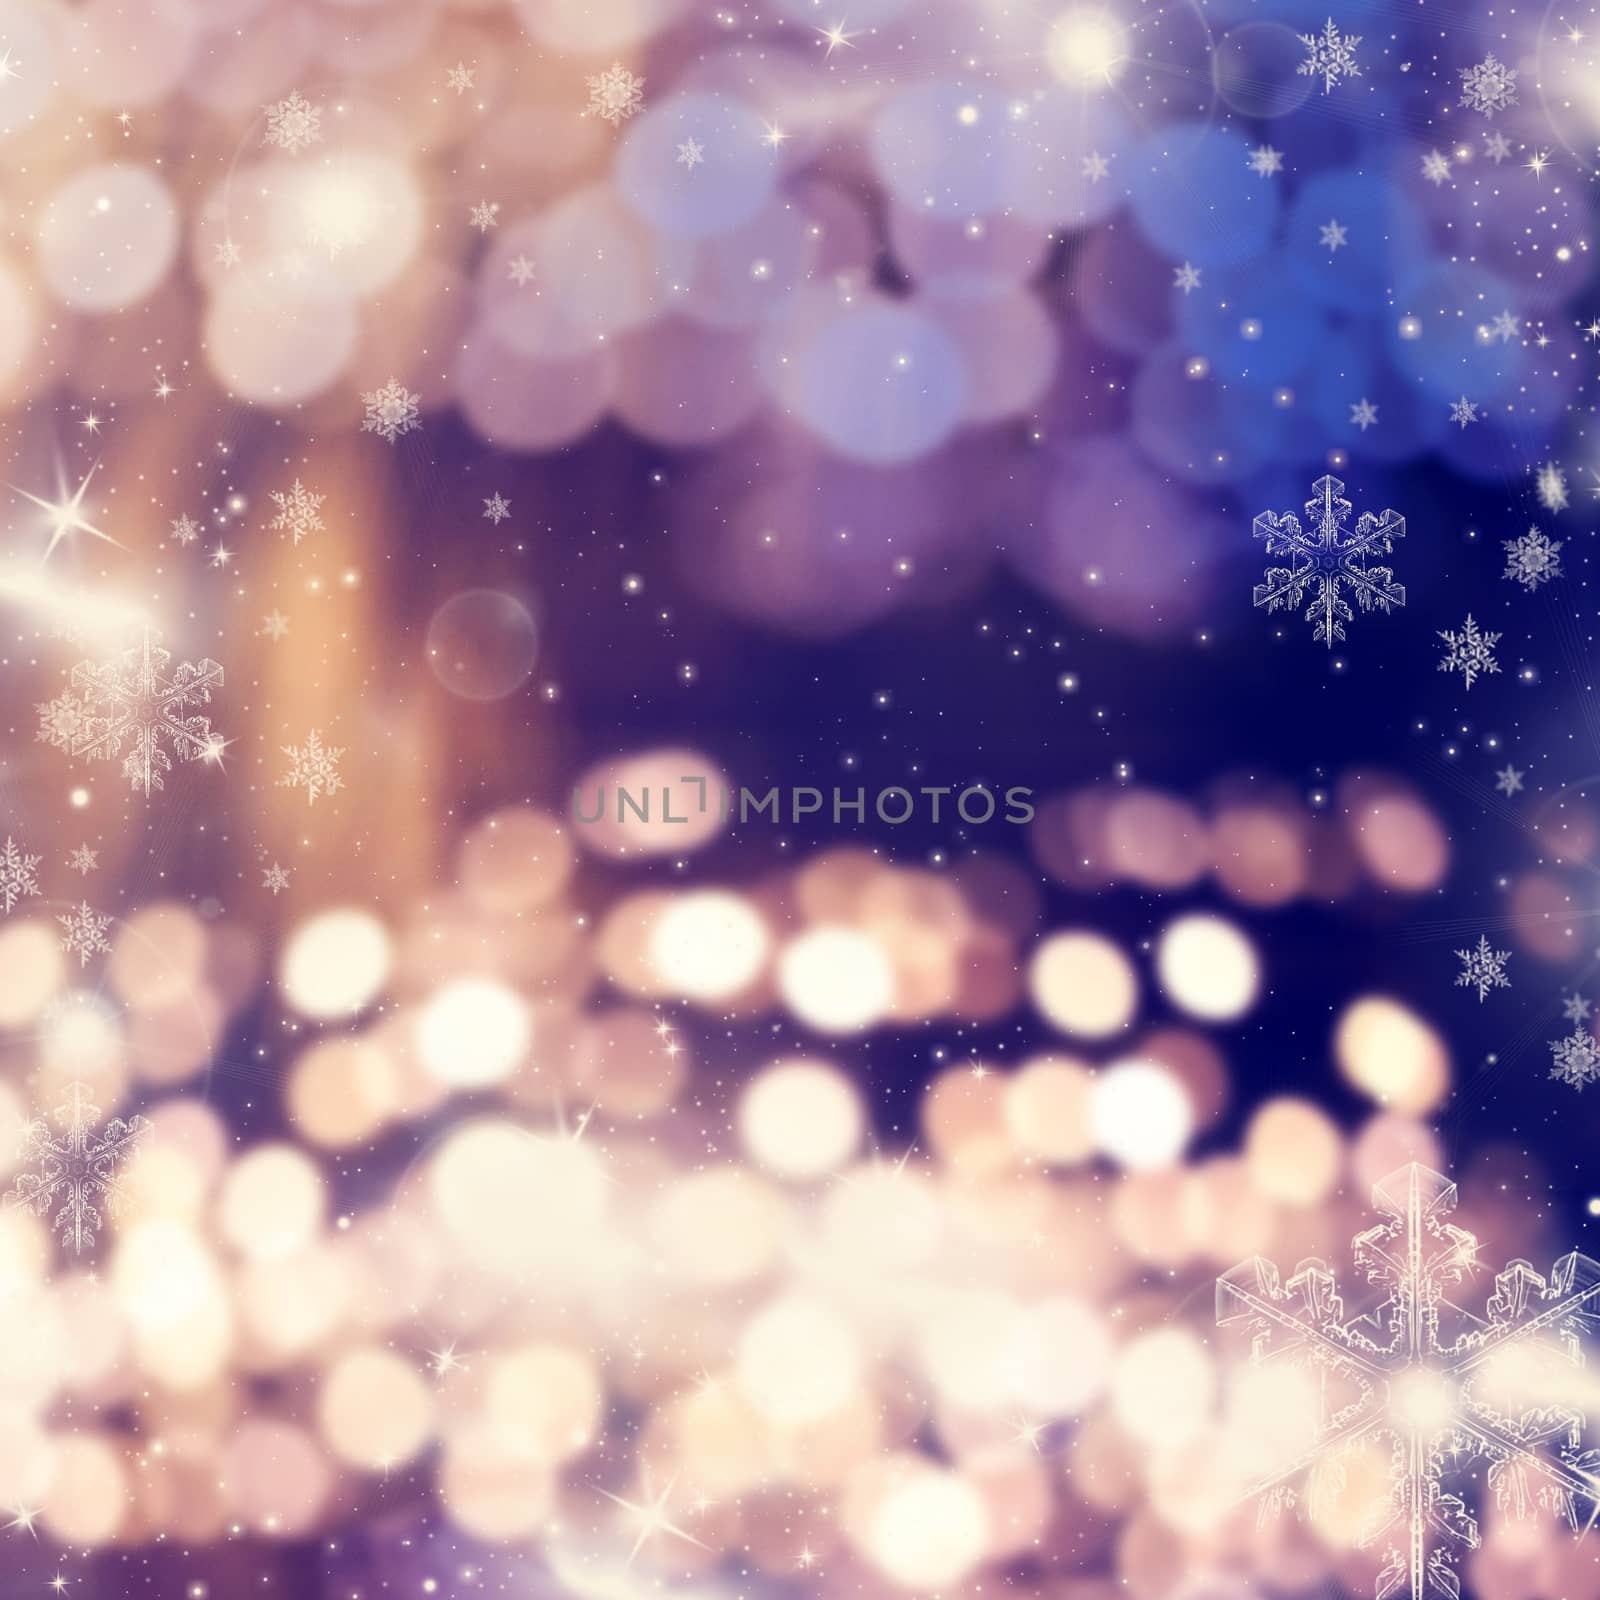 blurred bokeh of Christmas lights